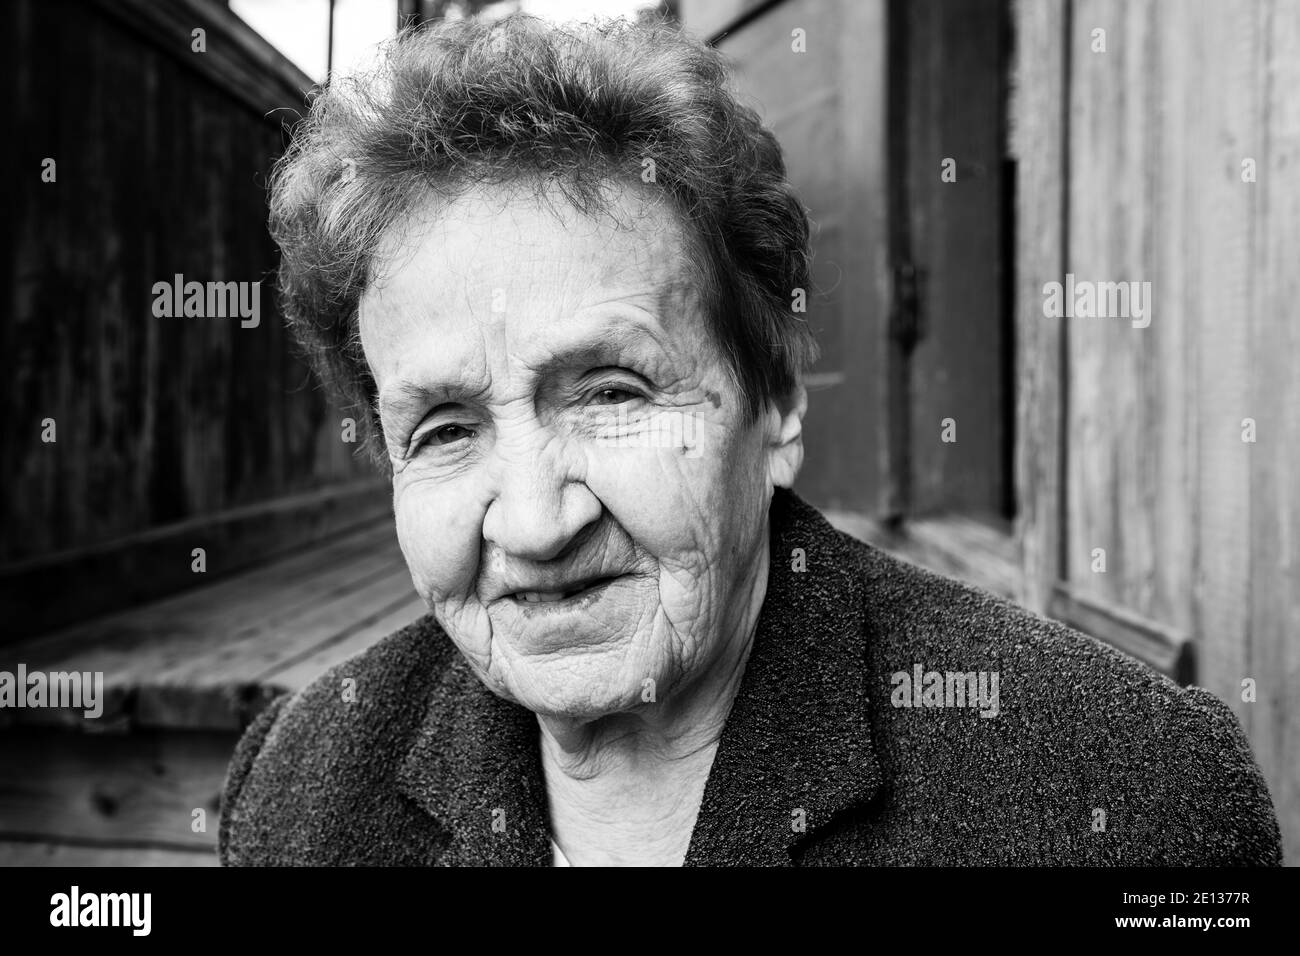 Portrait de la vieille femme près d'une maison rurale. Photo en noir et blanc. Banque D'Images